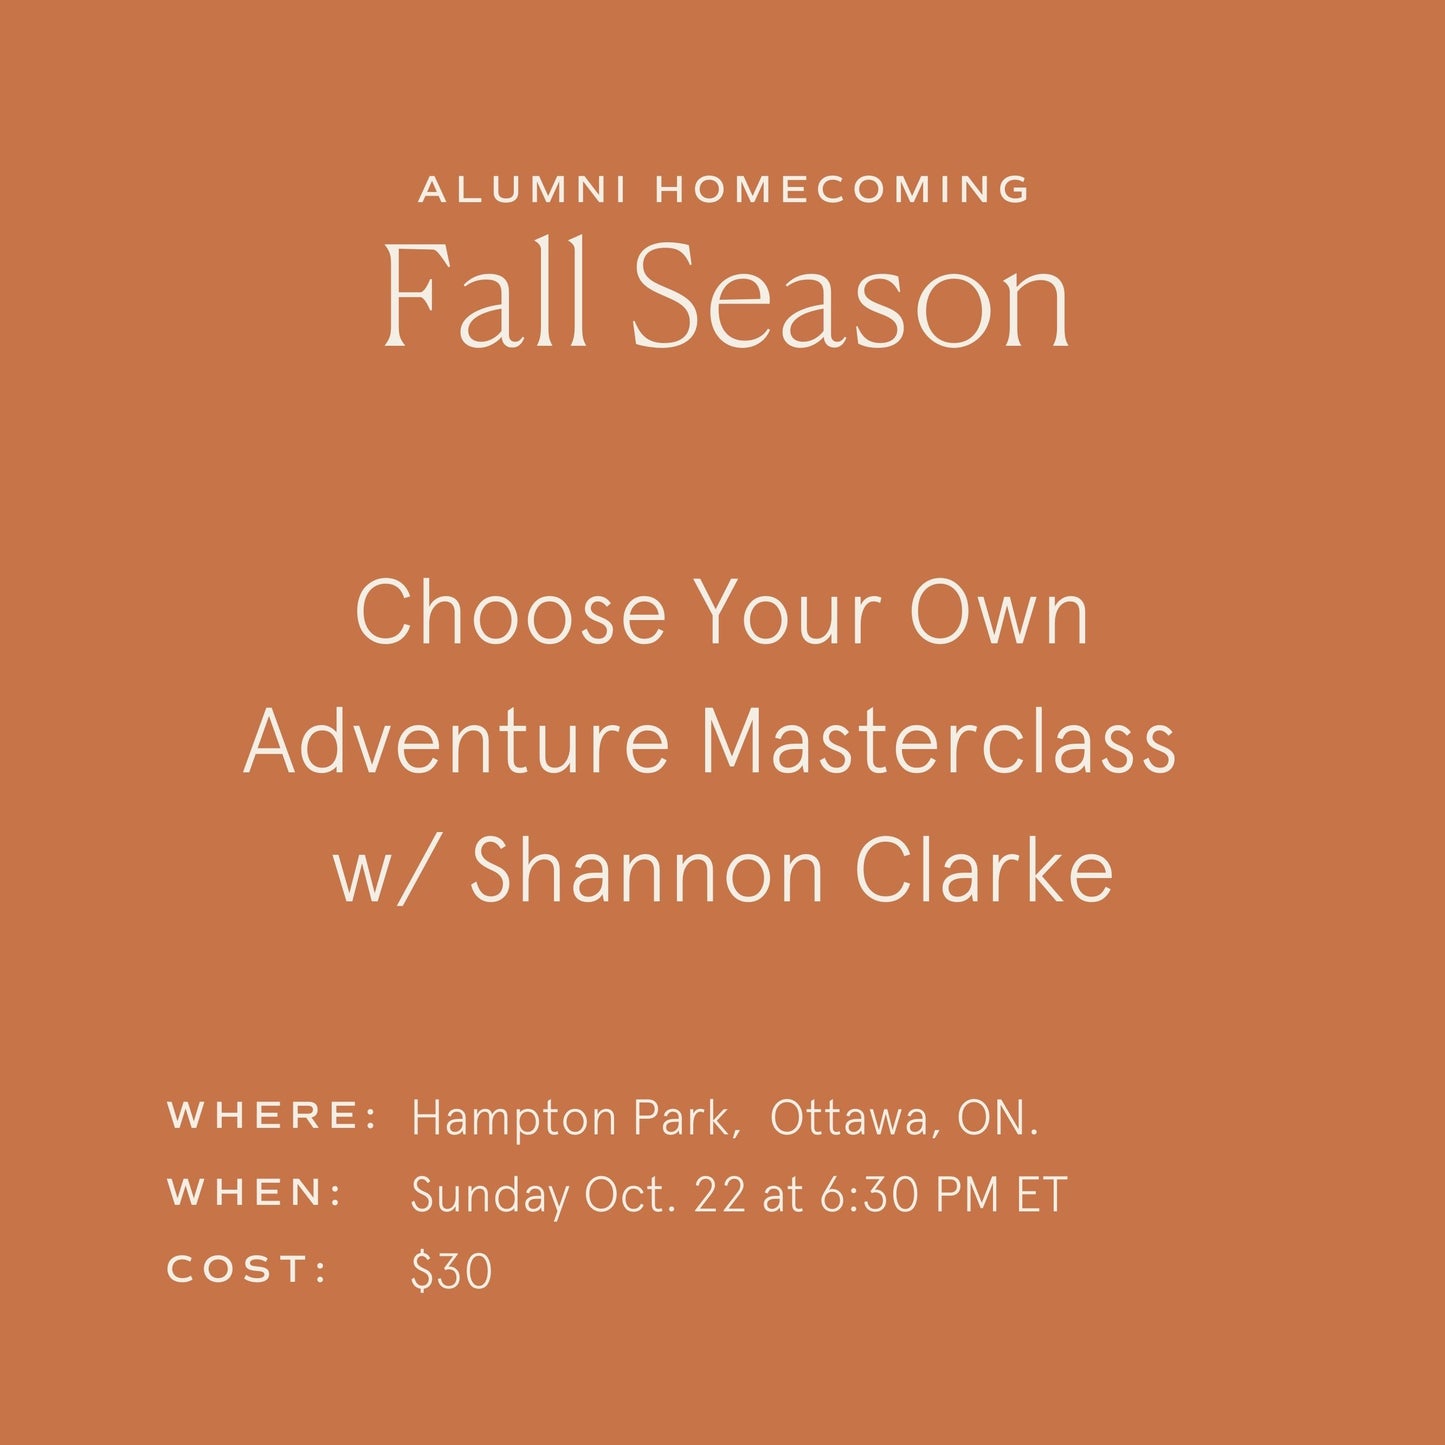 Week #1 - Choose Your Own Adventure Masterclass w/ Shannon Clarke